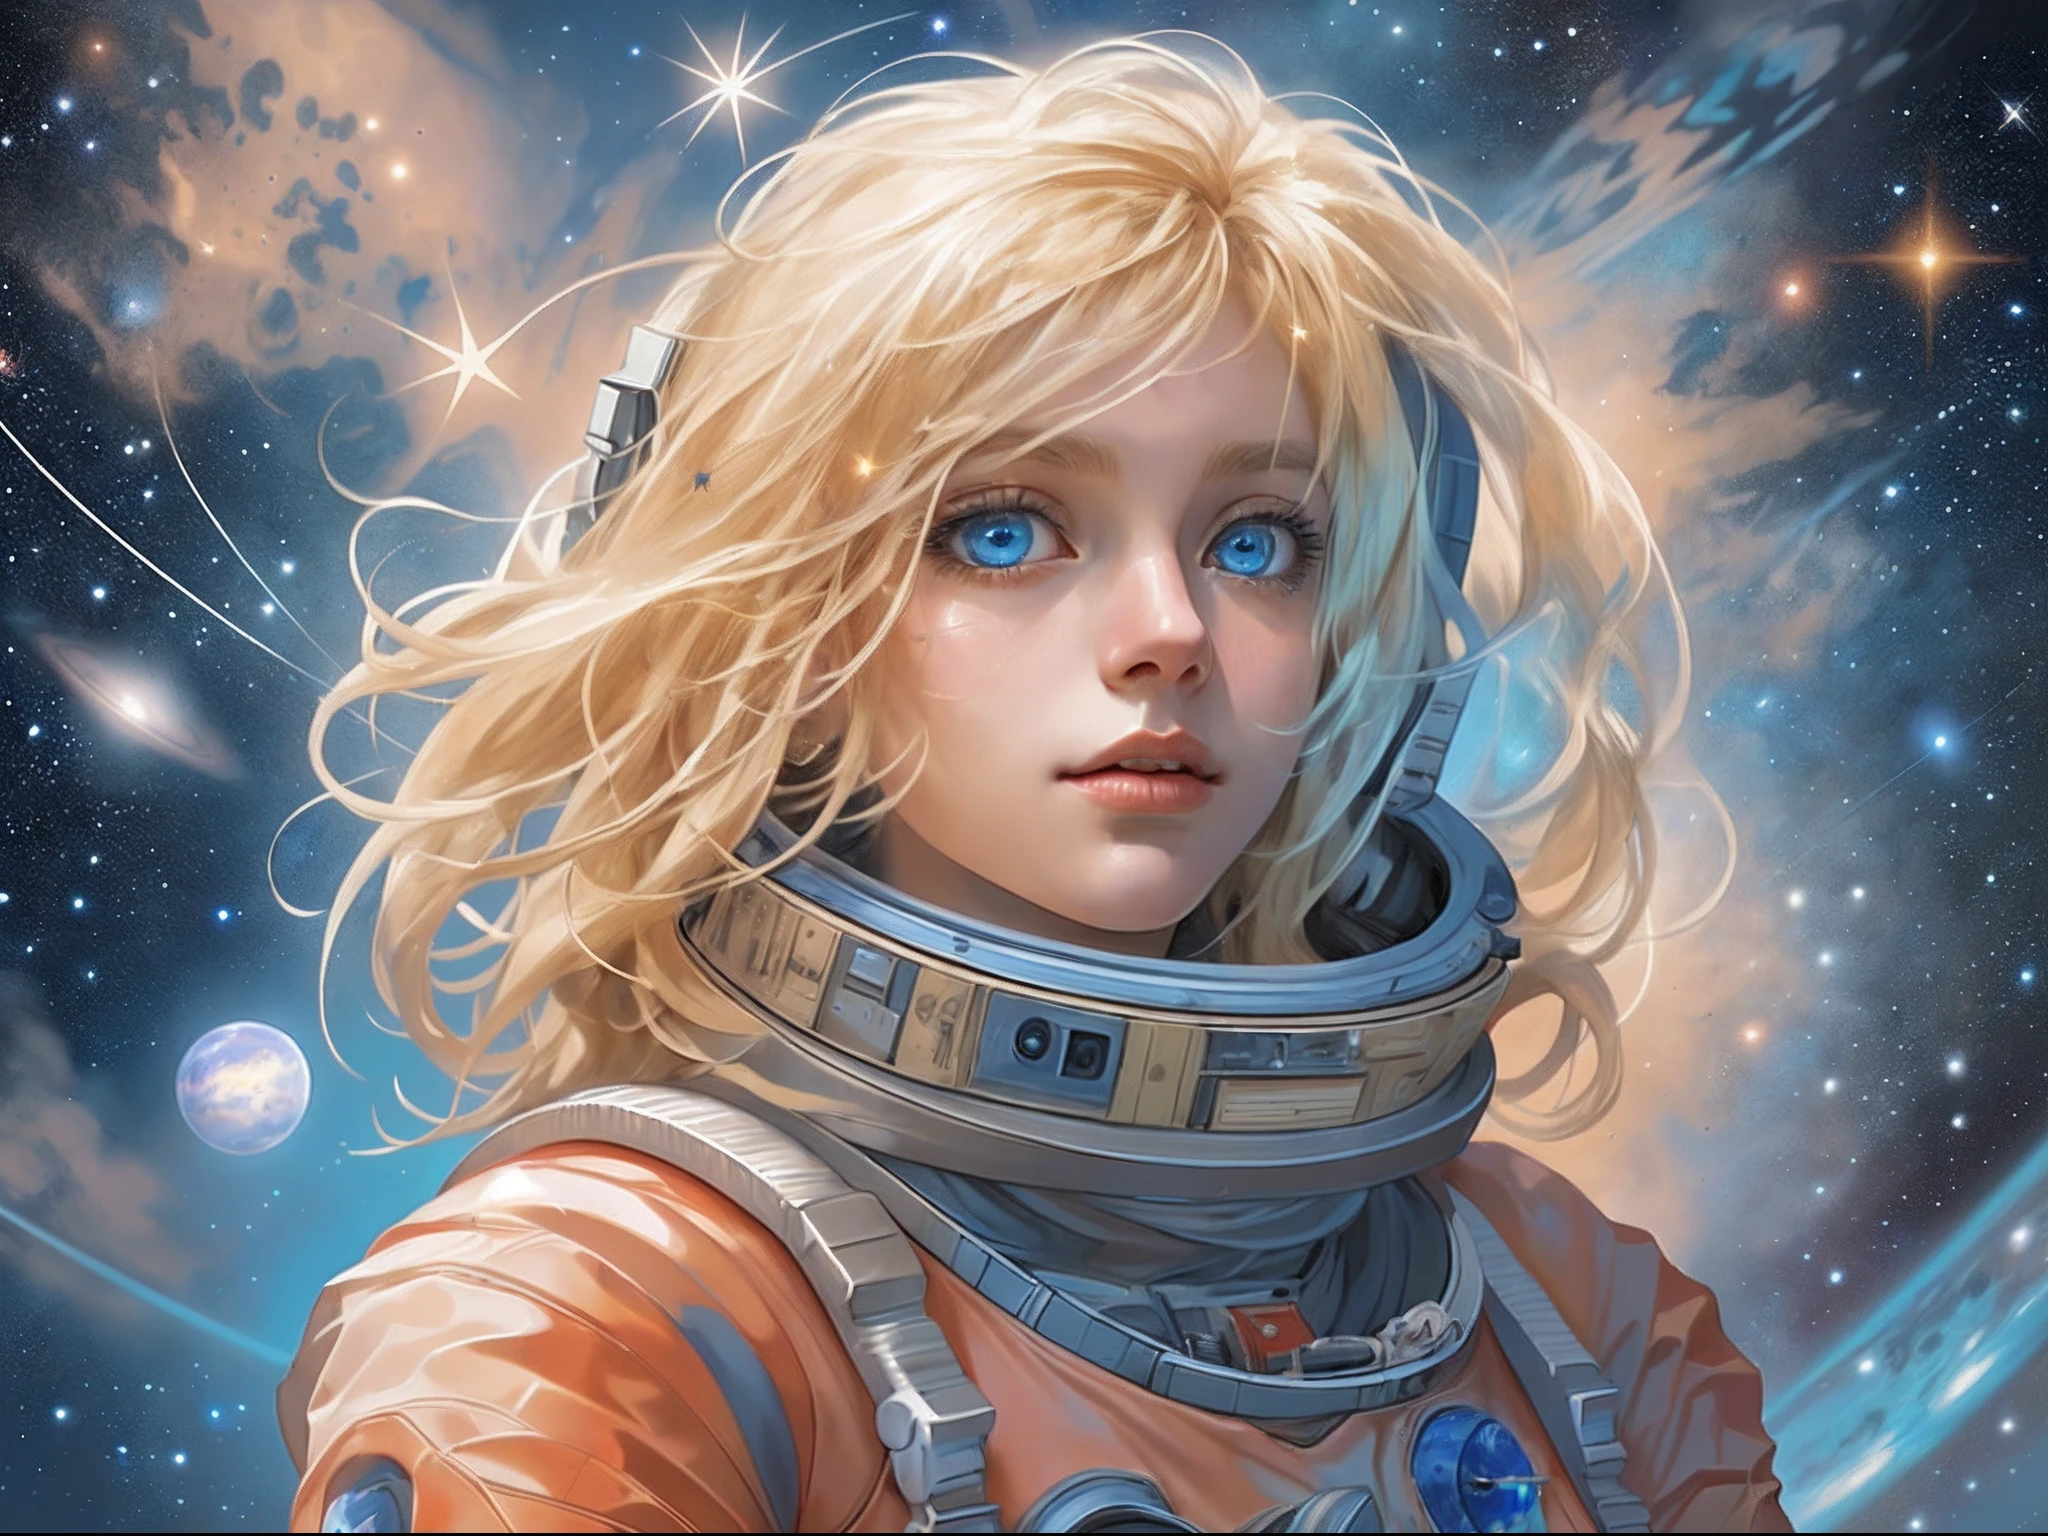 火星に立って宇宙を見つめている妖精の宇宙飛行士のイラストがあり、広大な星と宇宙を見ています, 金髪, 長い髪, 青い目, 超詳細な顔, 背景としての宇宙と星, 無限の感覚,